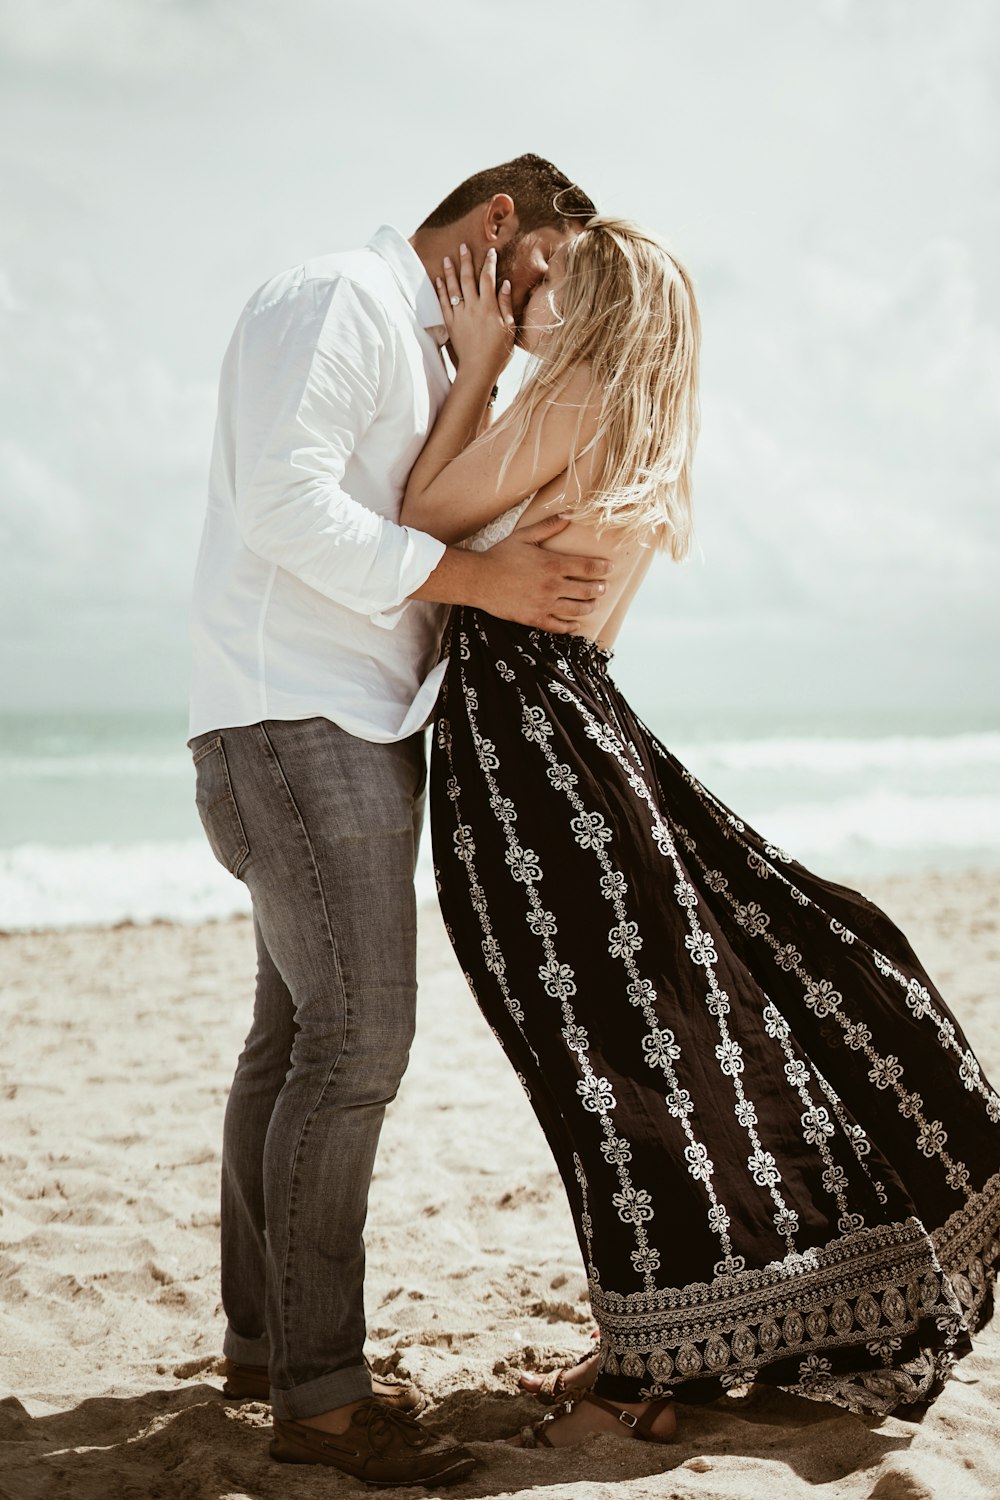 昼間の海岸でキスをするカップルのセレクティブフォーカス写真